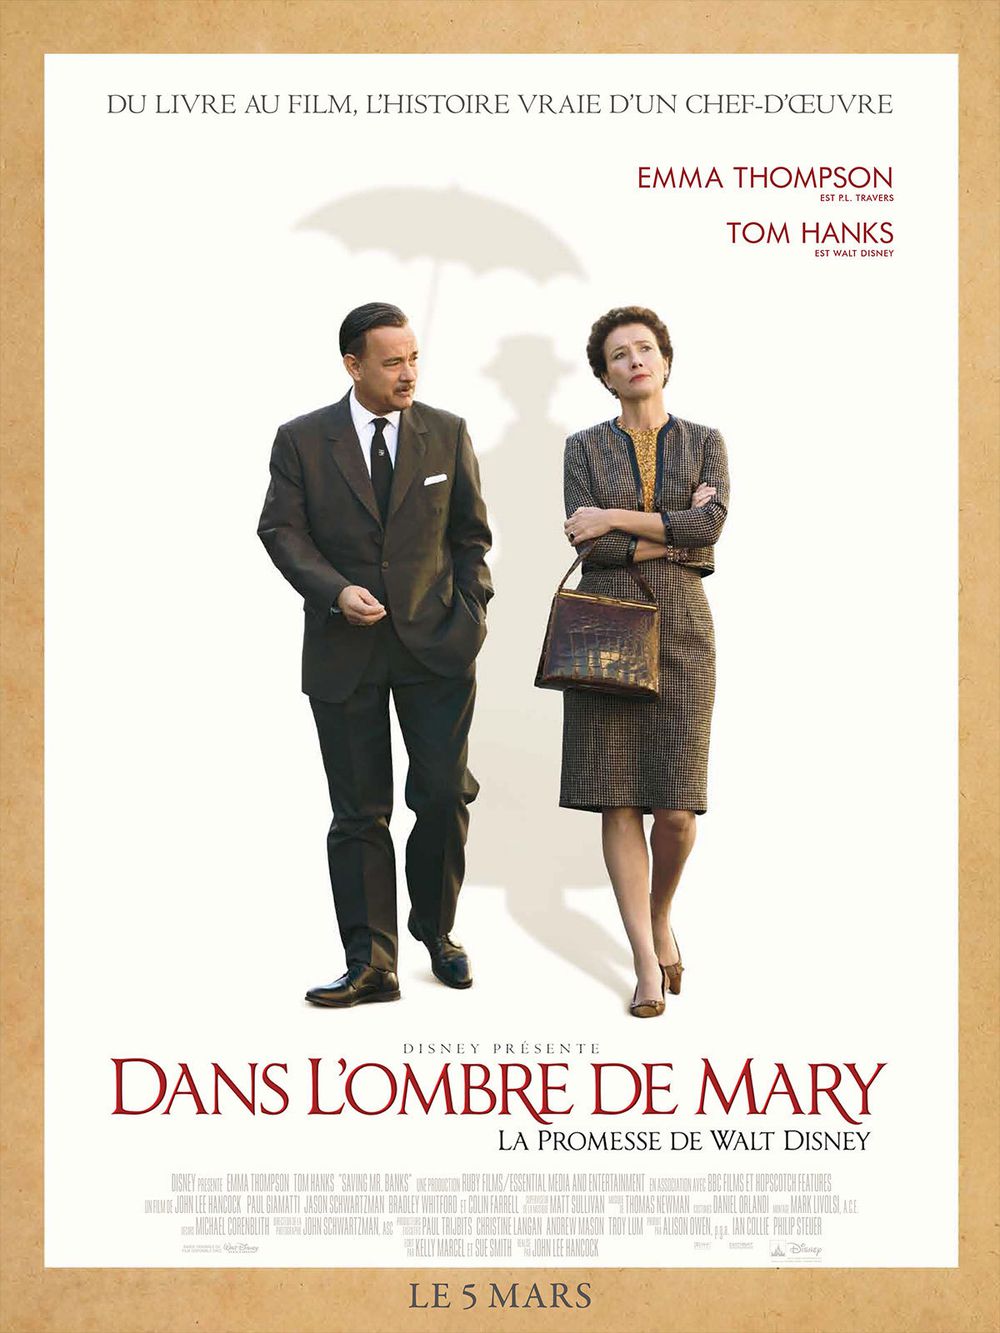 Dans l'ombre de Mary - La Promesse de Walt Disney - Film (2013) streaming VF gratuit complet